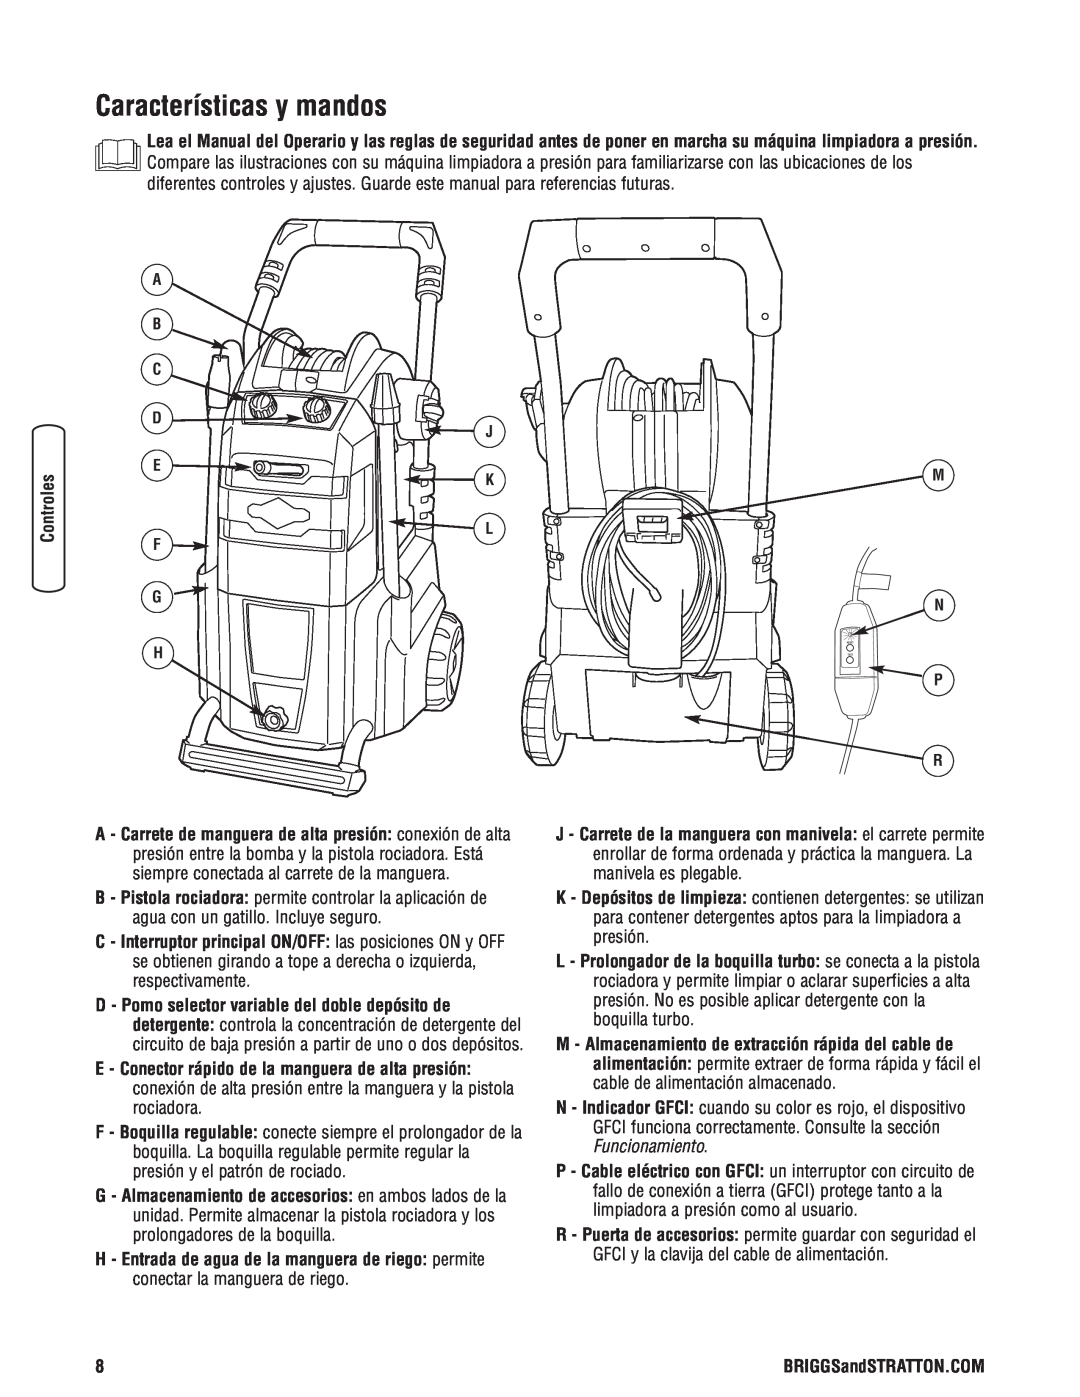 Briggs & Stratton Electric Pressure Washer manual Características y mandos 